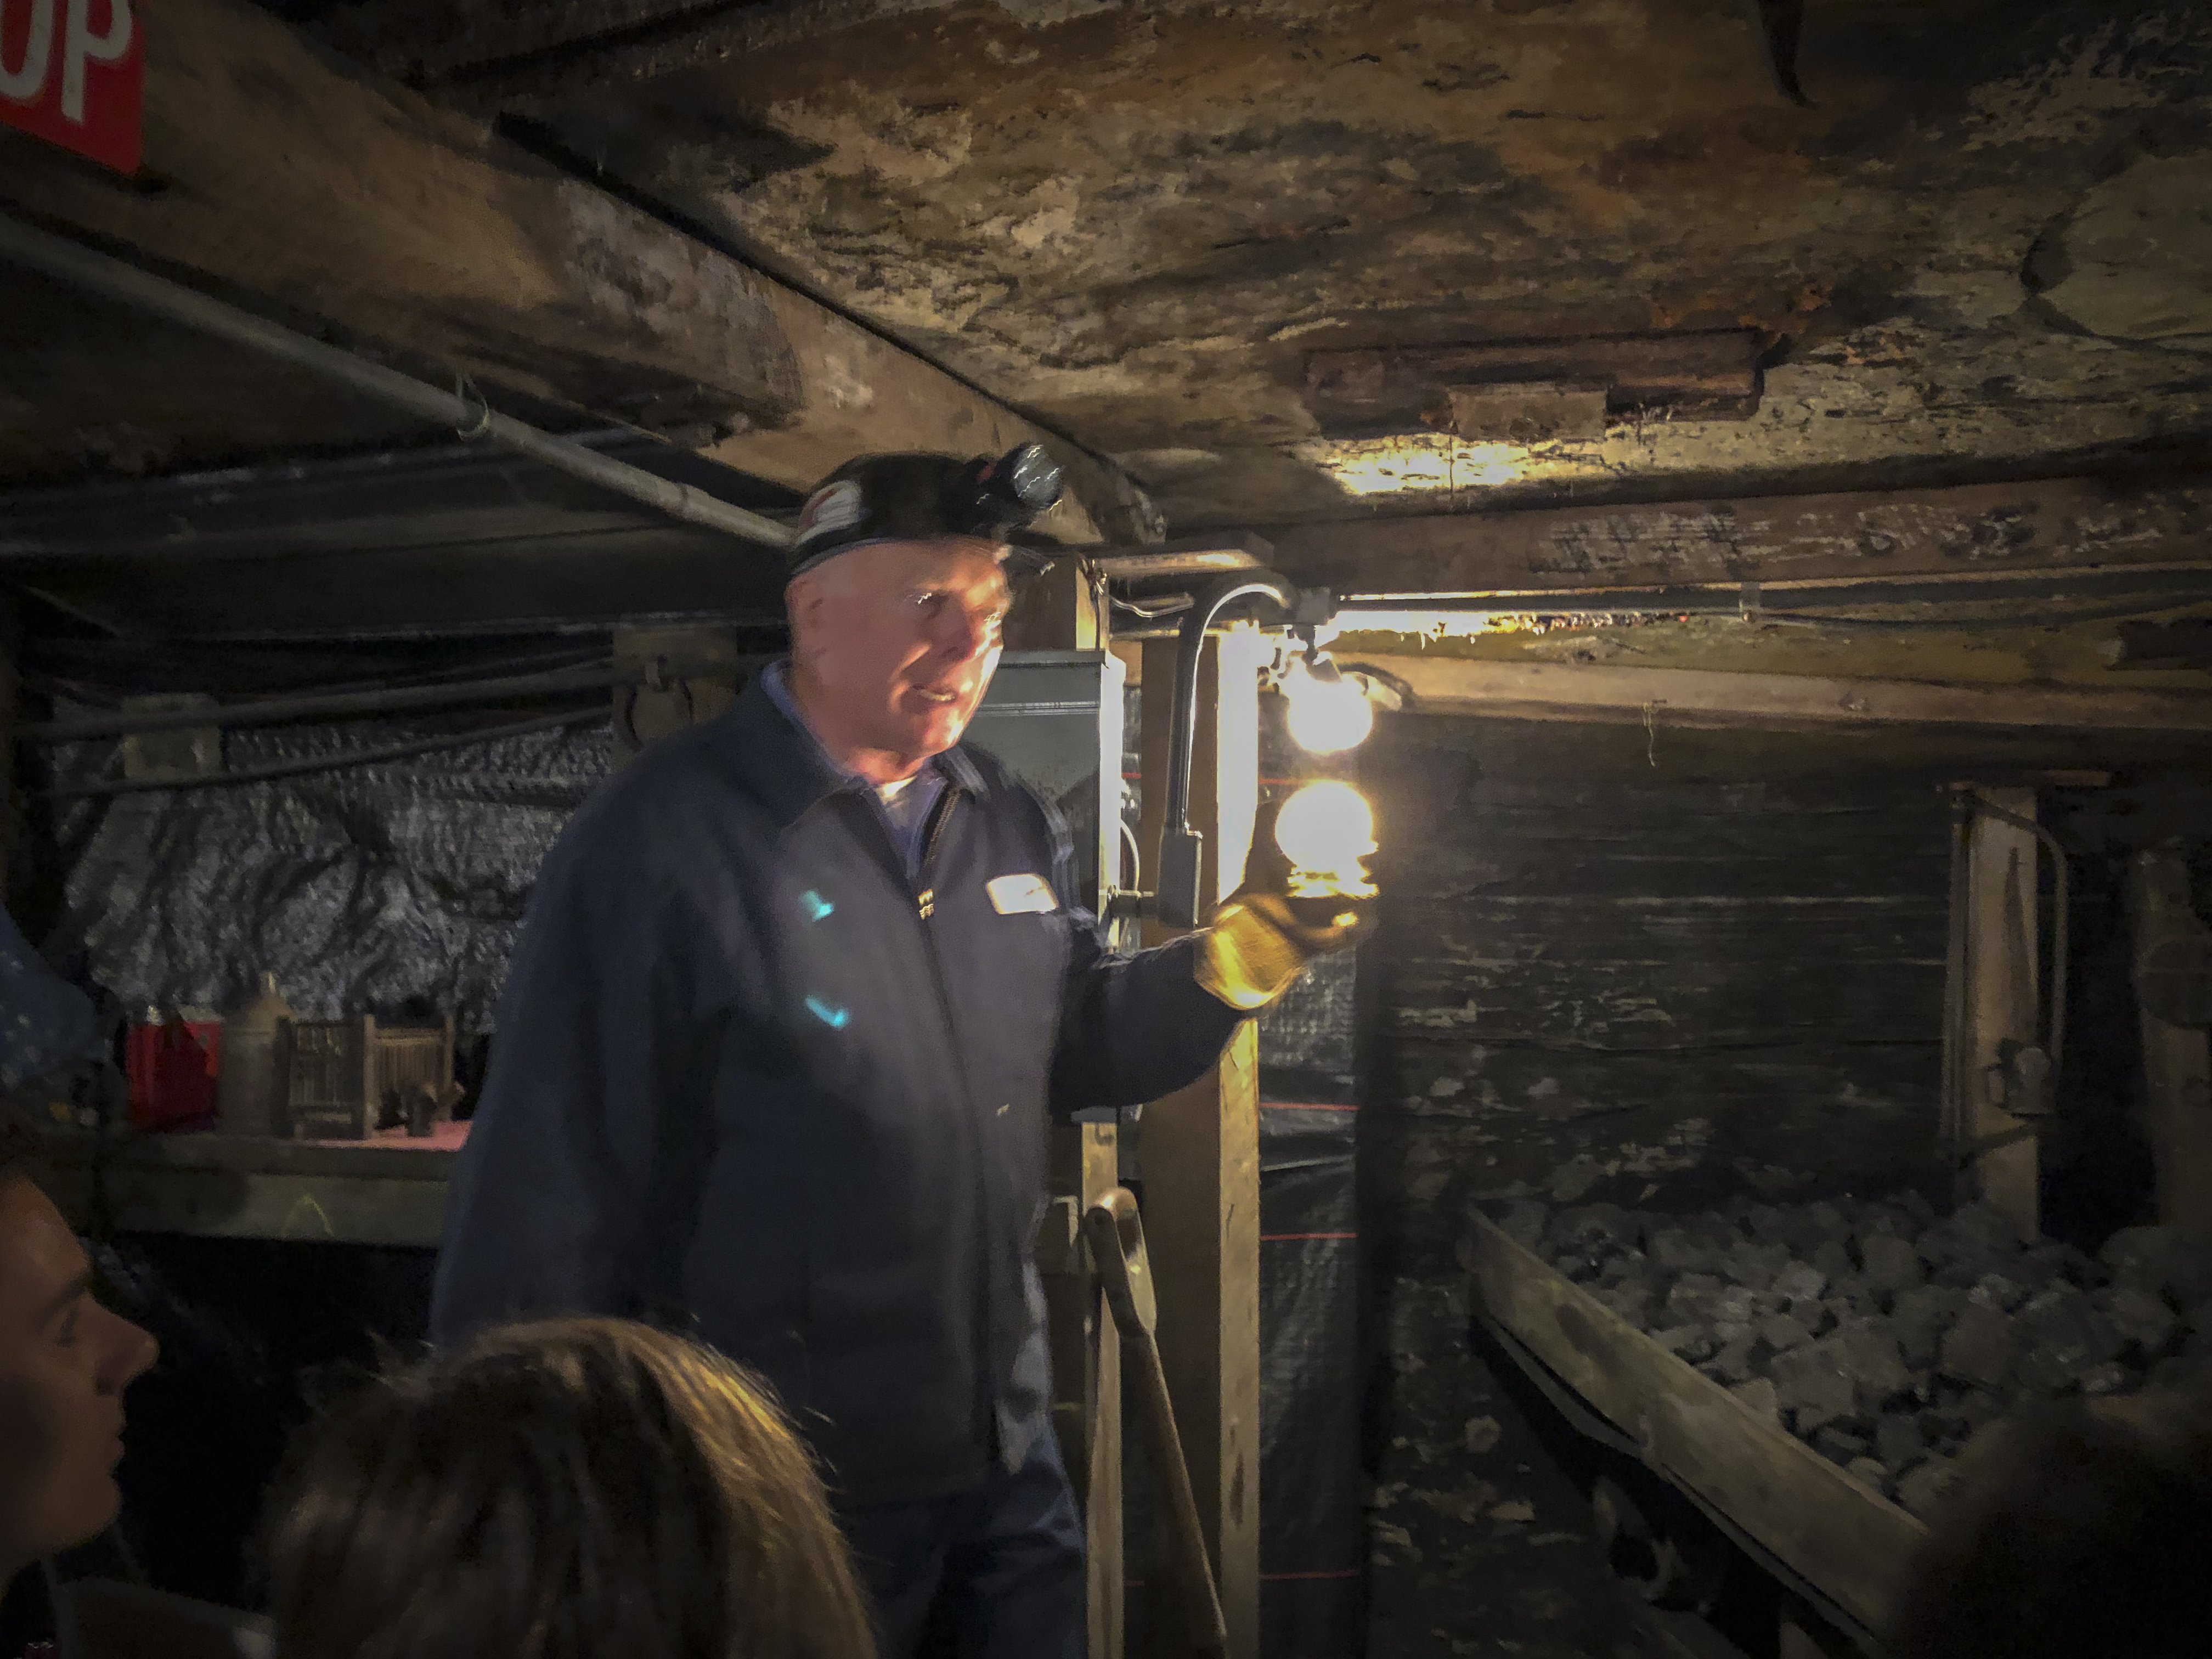 Inside a coal mine